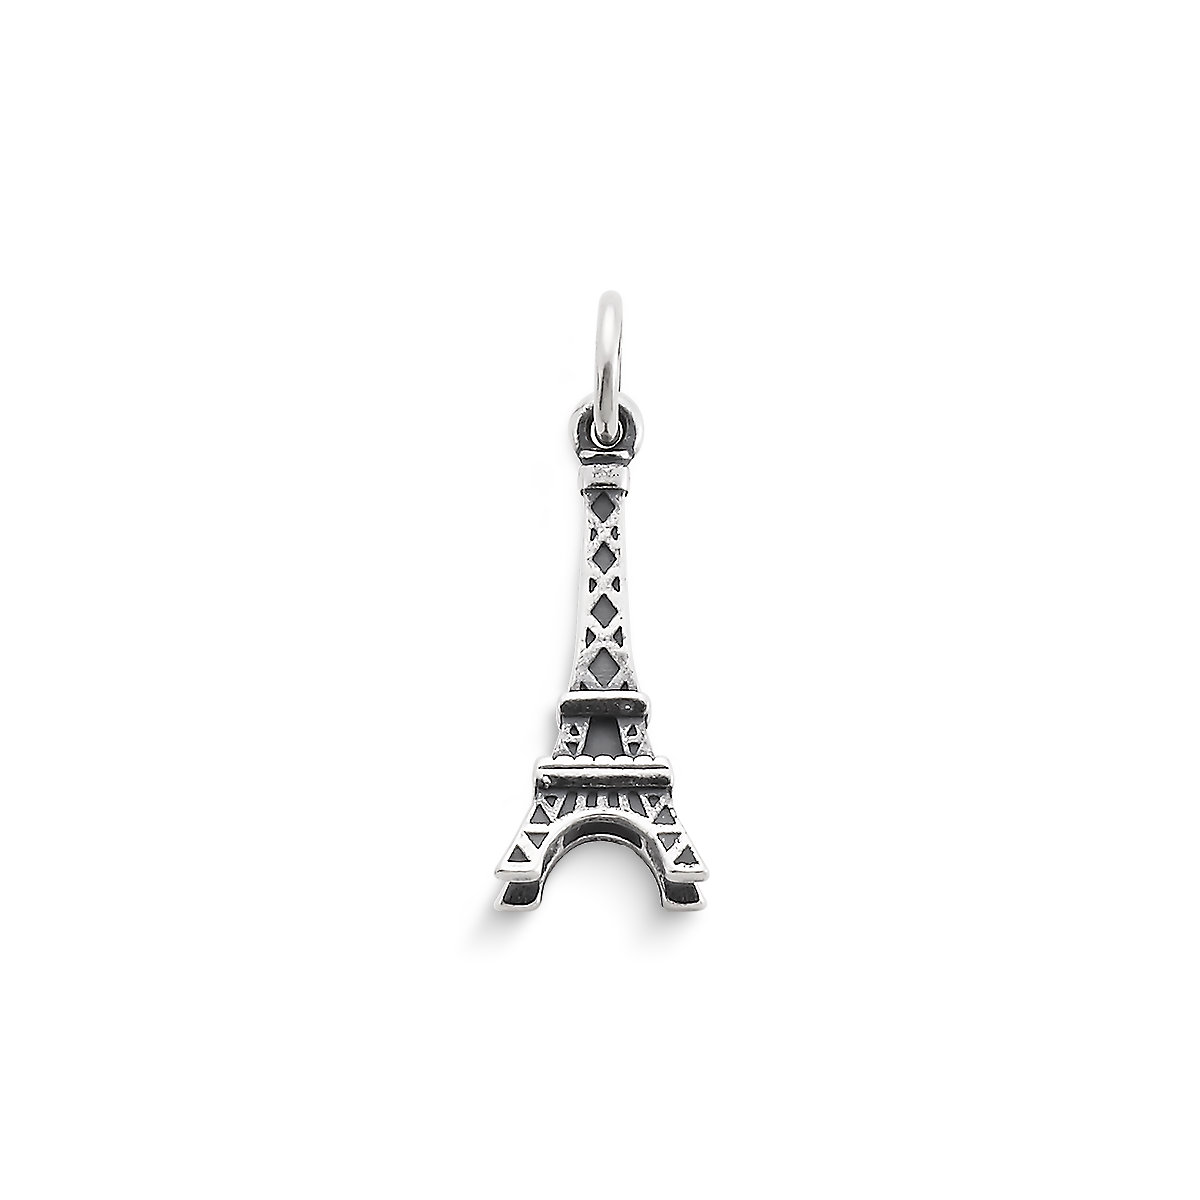 2pcs-1" Eiffel Tower charm-enamel Paris Charm-you pick the color 